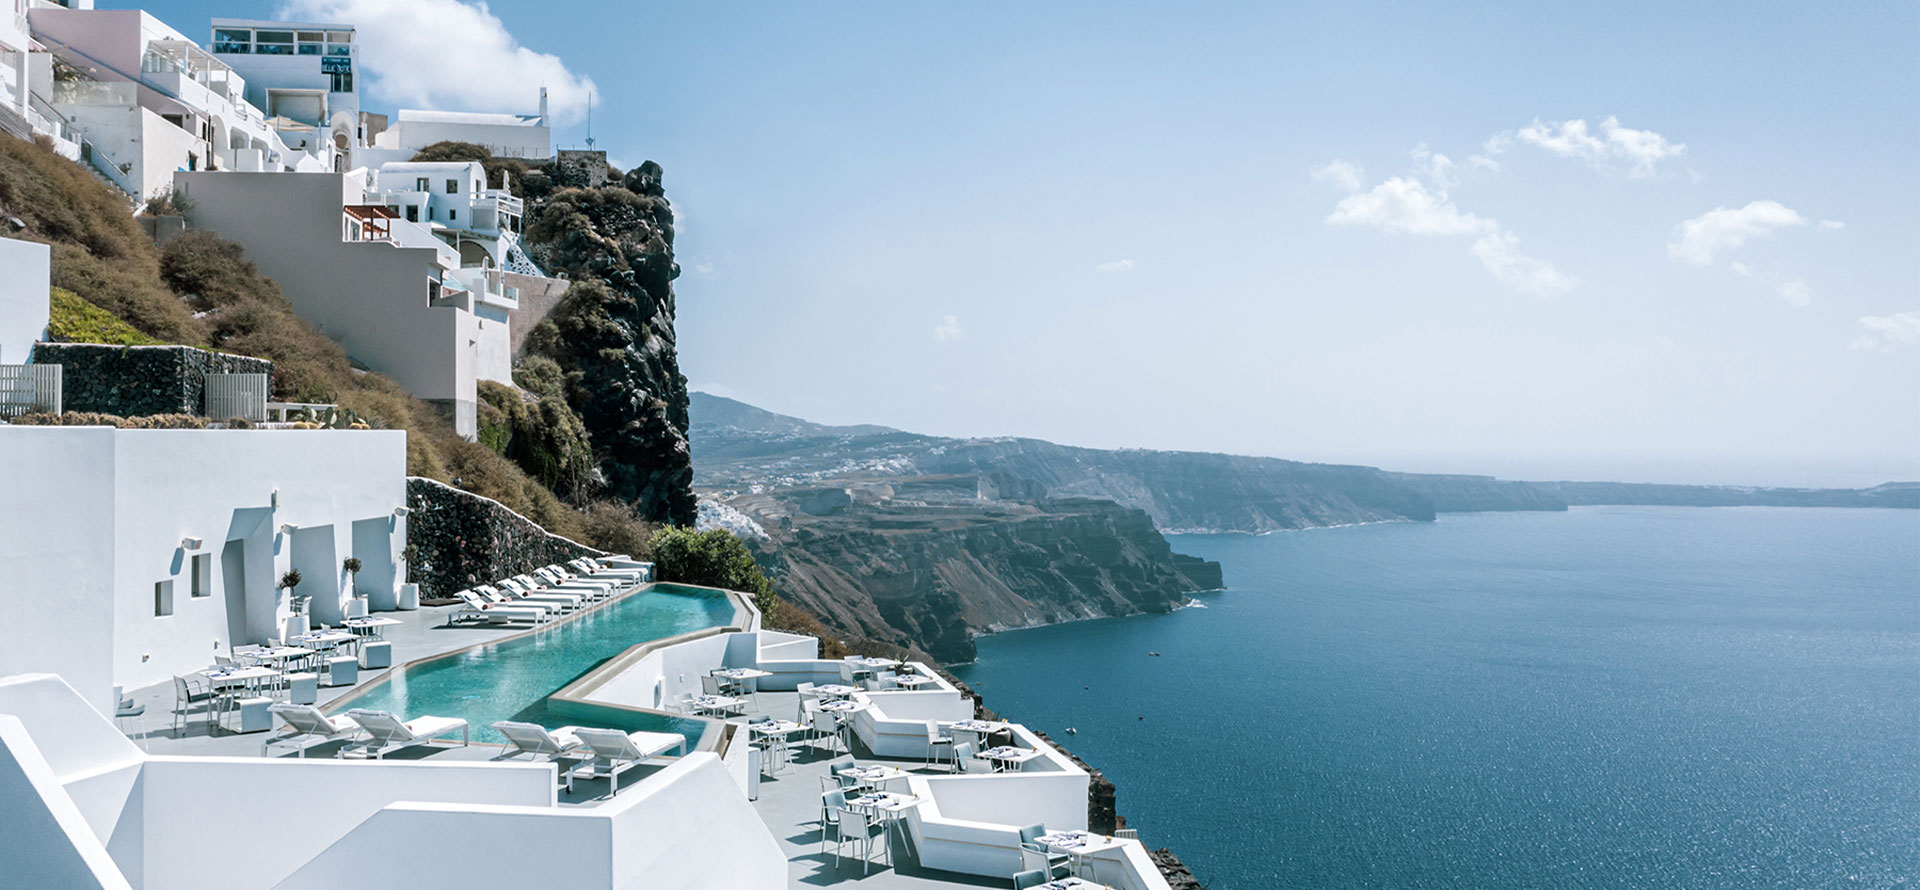 Greece all inclusive resorts landscape.